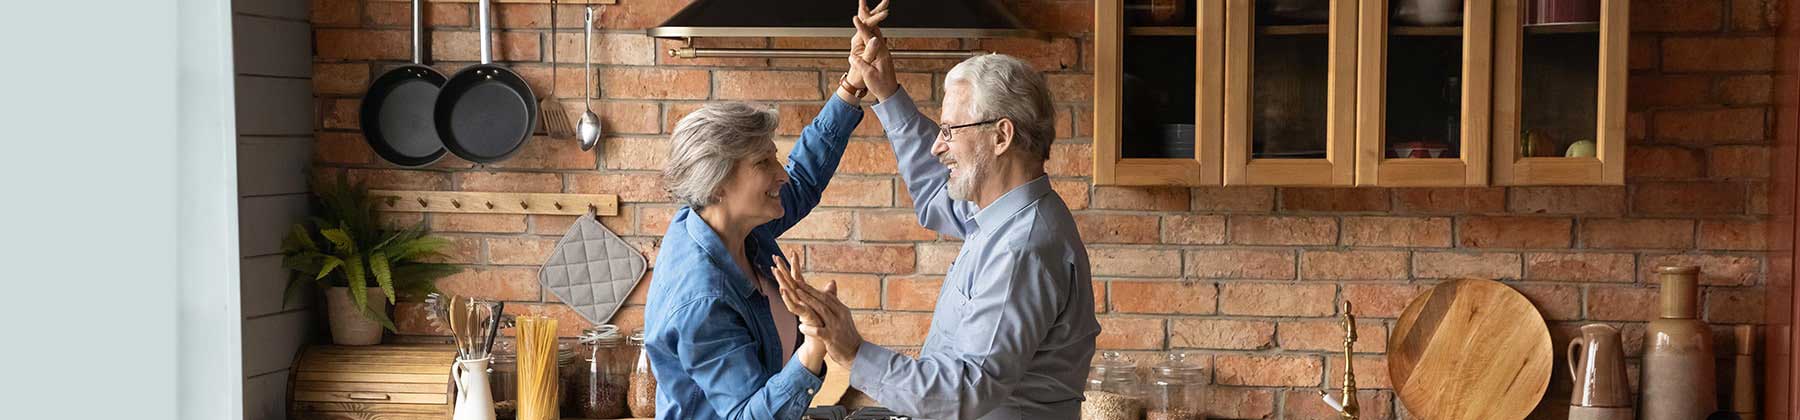 Coppia uomo e donna in età pensionabile accennano gioisamente un passo di danza nella loro nuova cucina